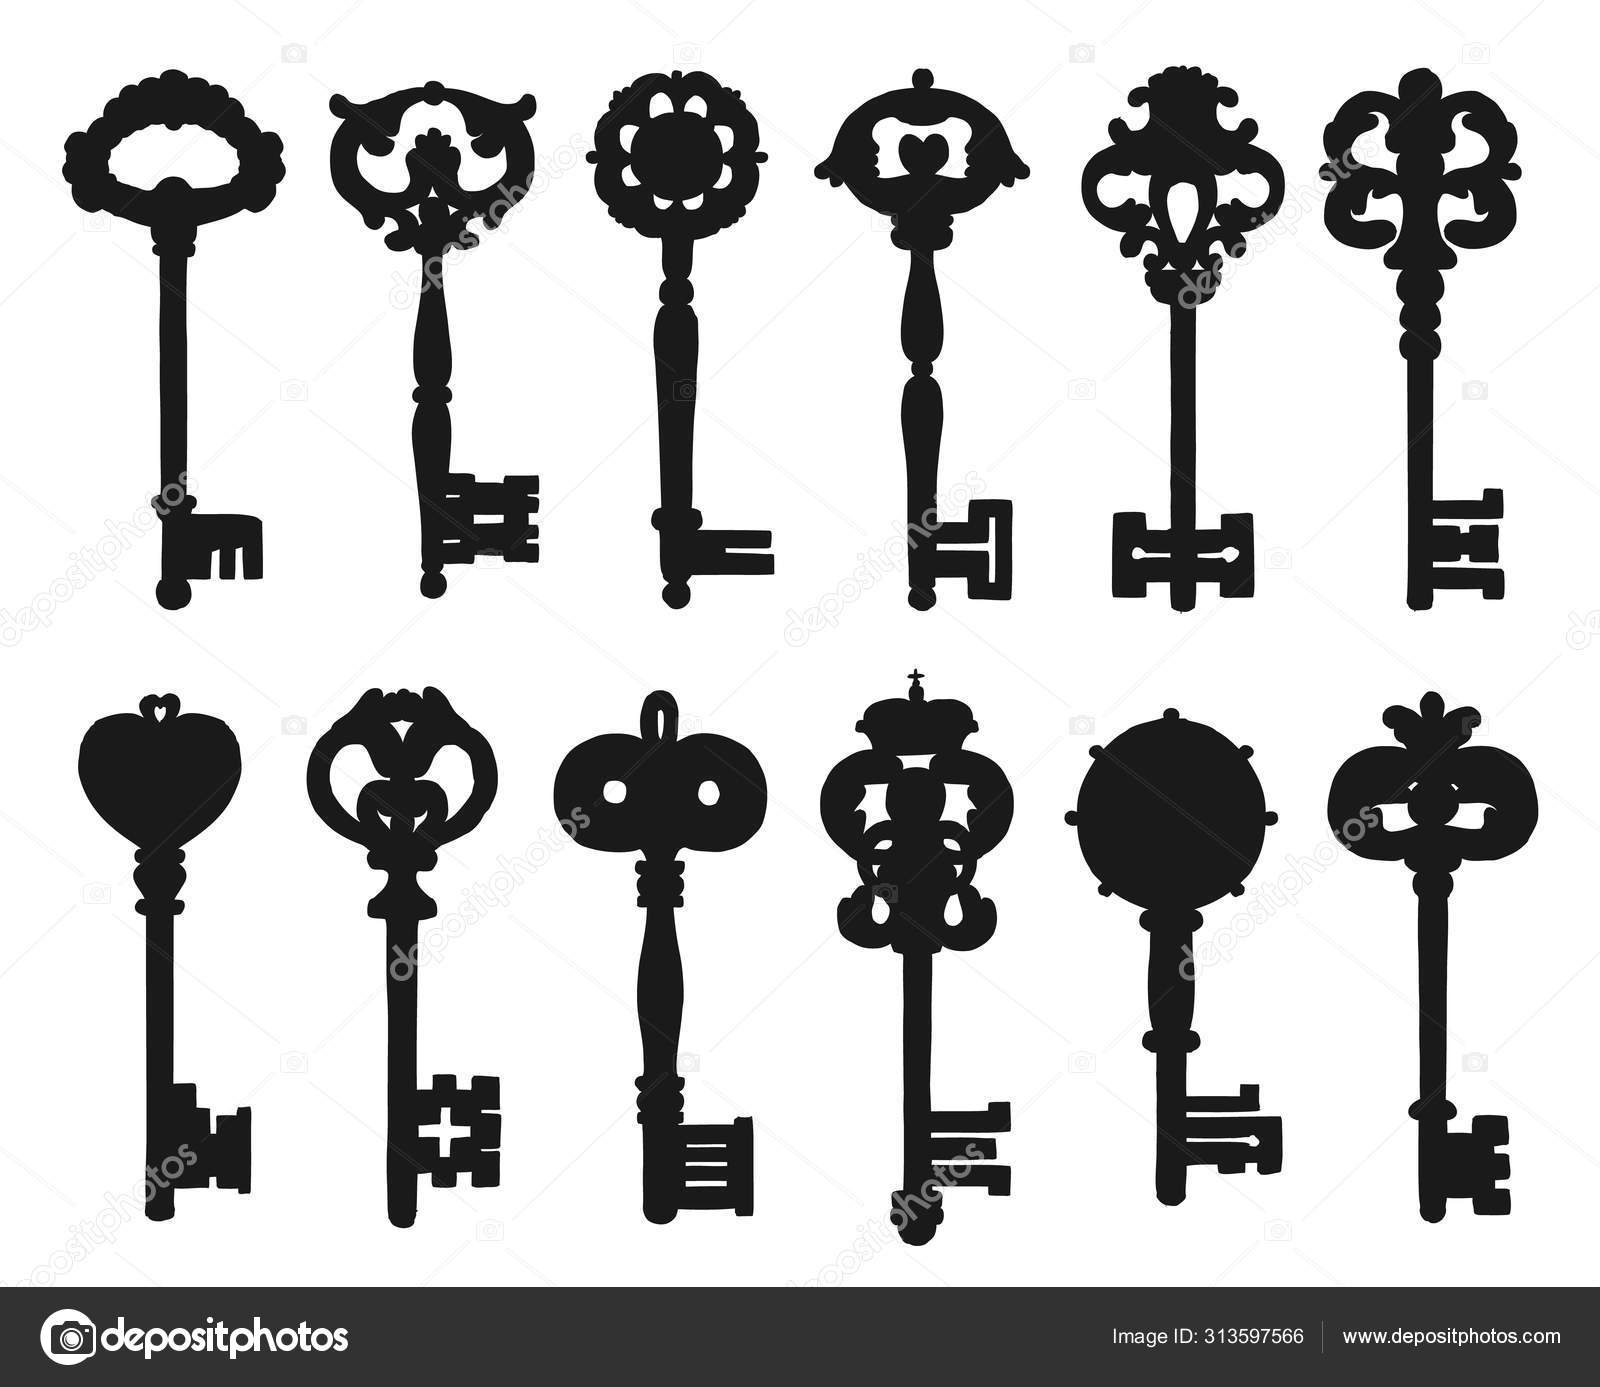 Vintage Ornamental Keys And Locks  Key tattoos, Key drawings, Vintage key  tattoos